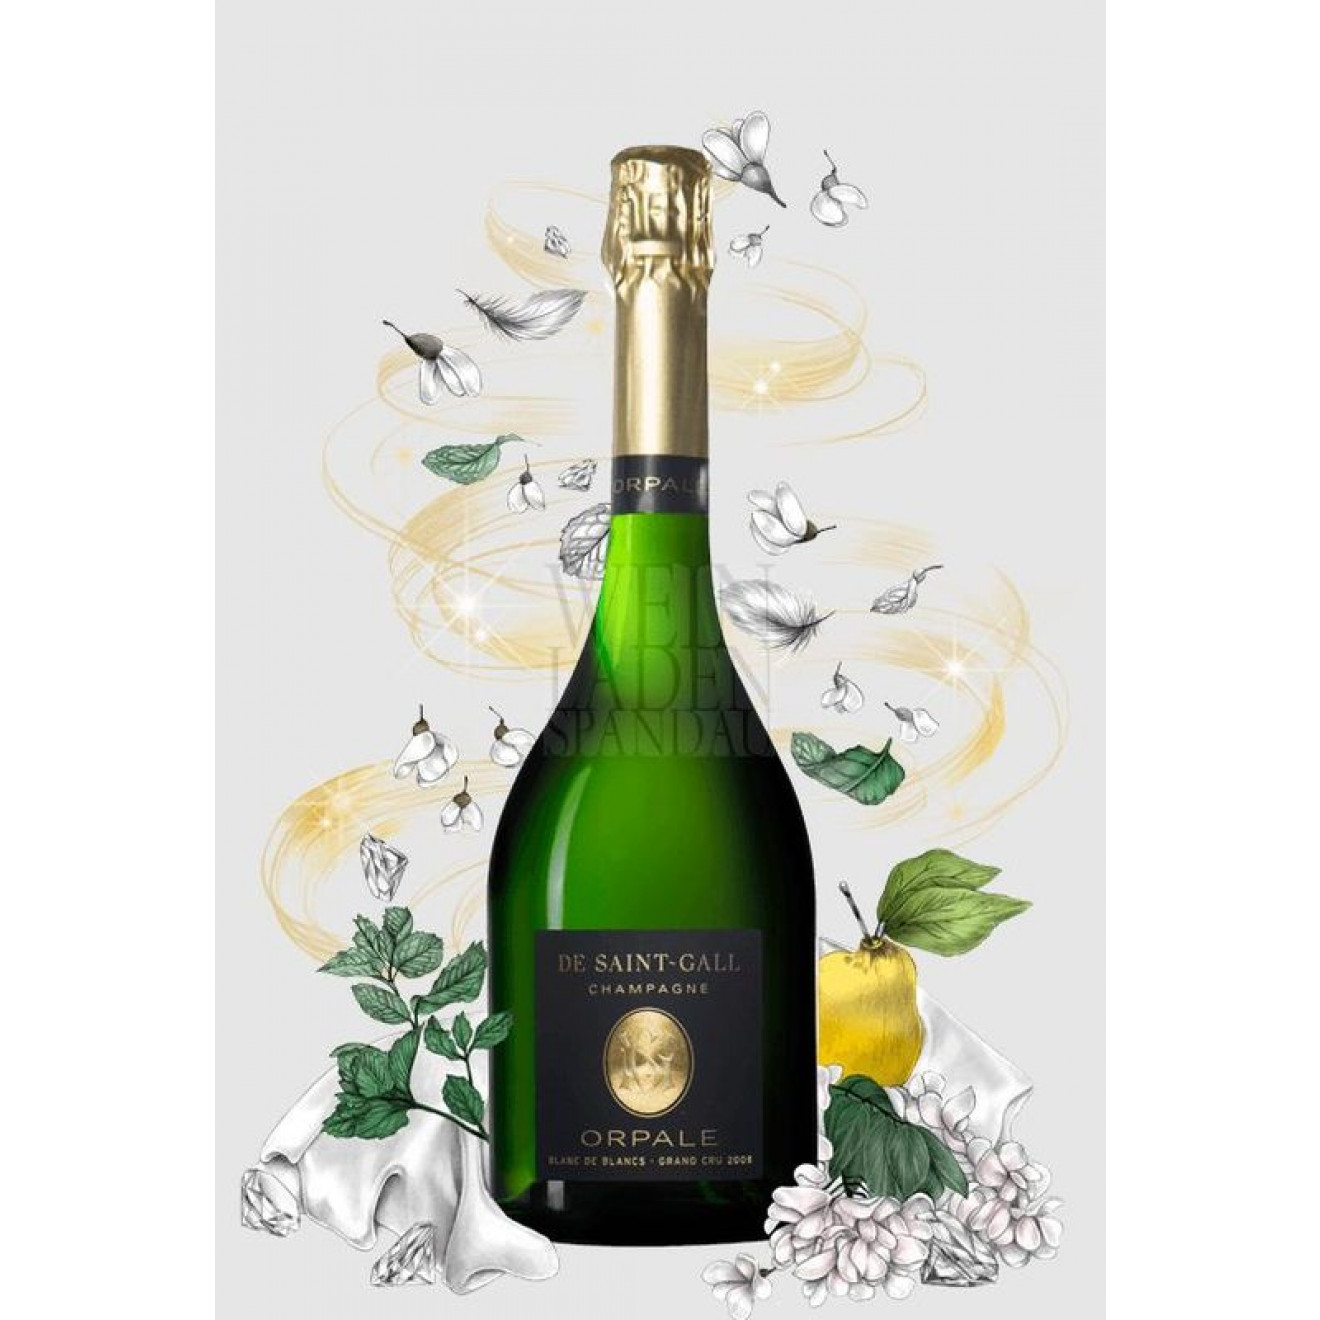 Champagne de Saint Gall Grand Cru Cuvee Prestige Cuvee Opale Milleseime 2004  0,75l